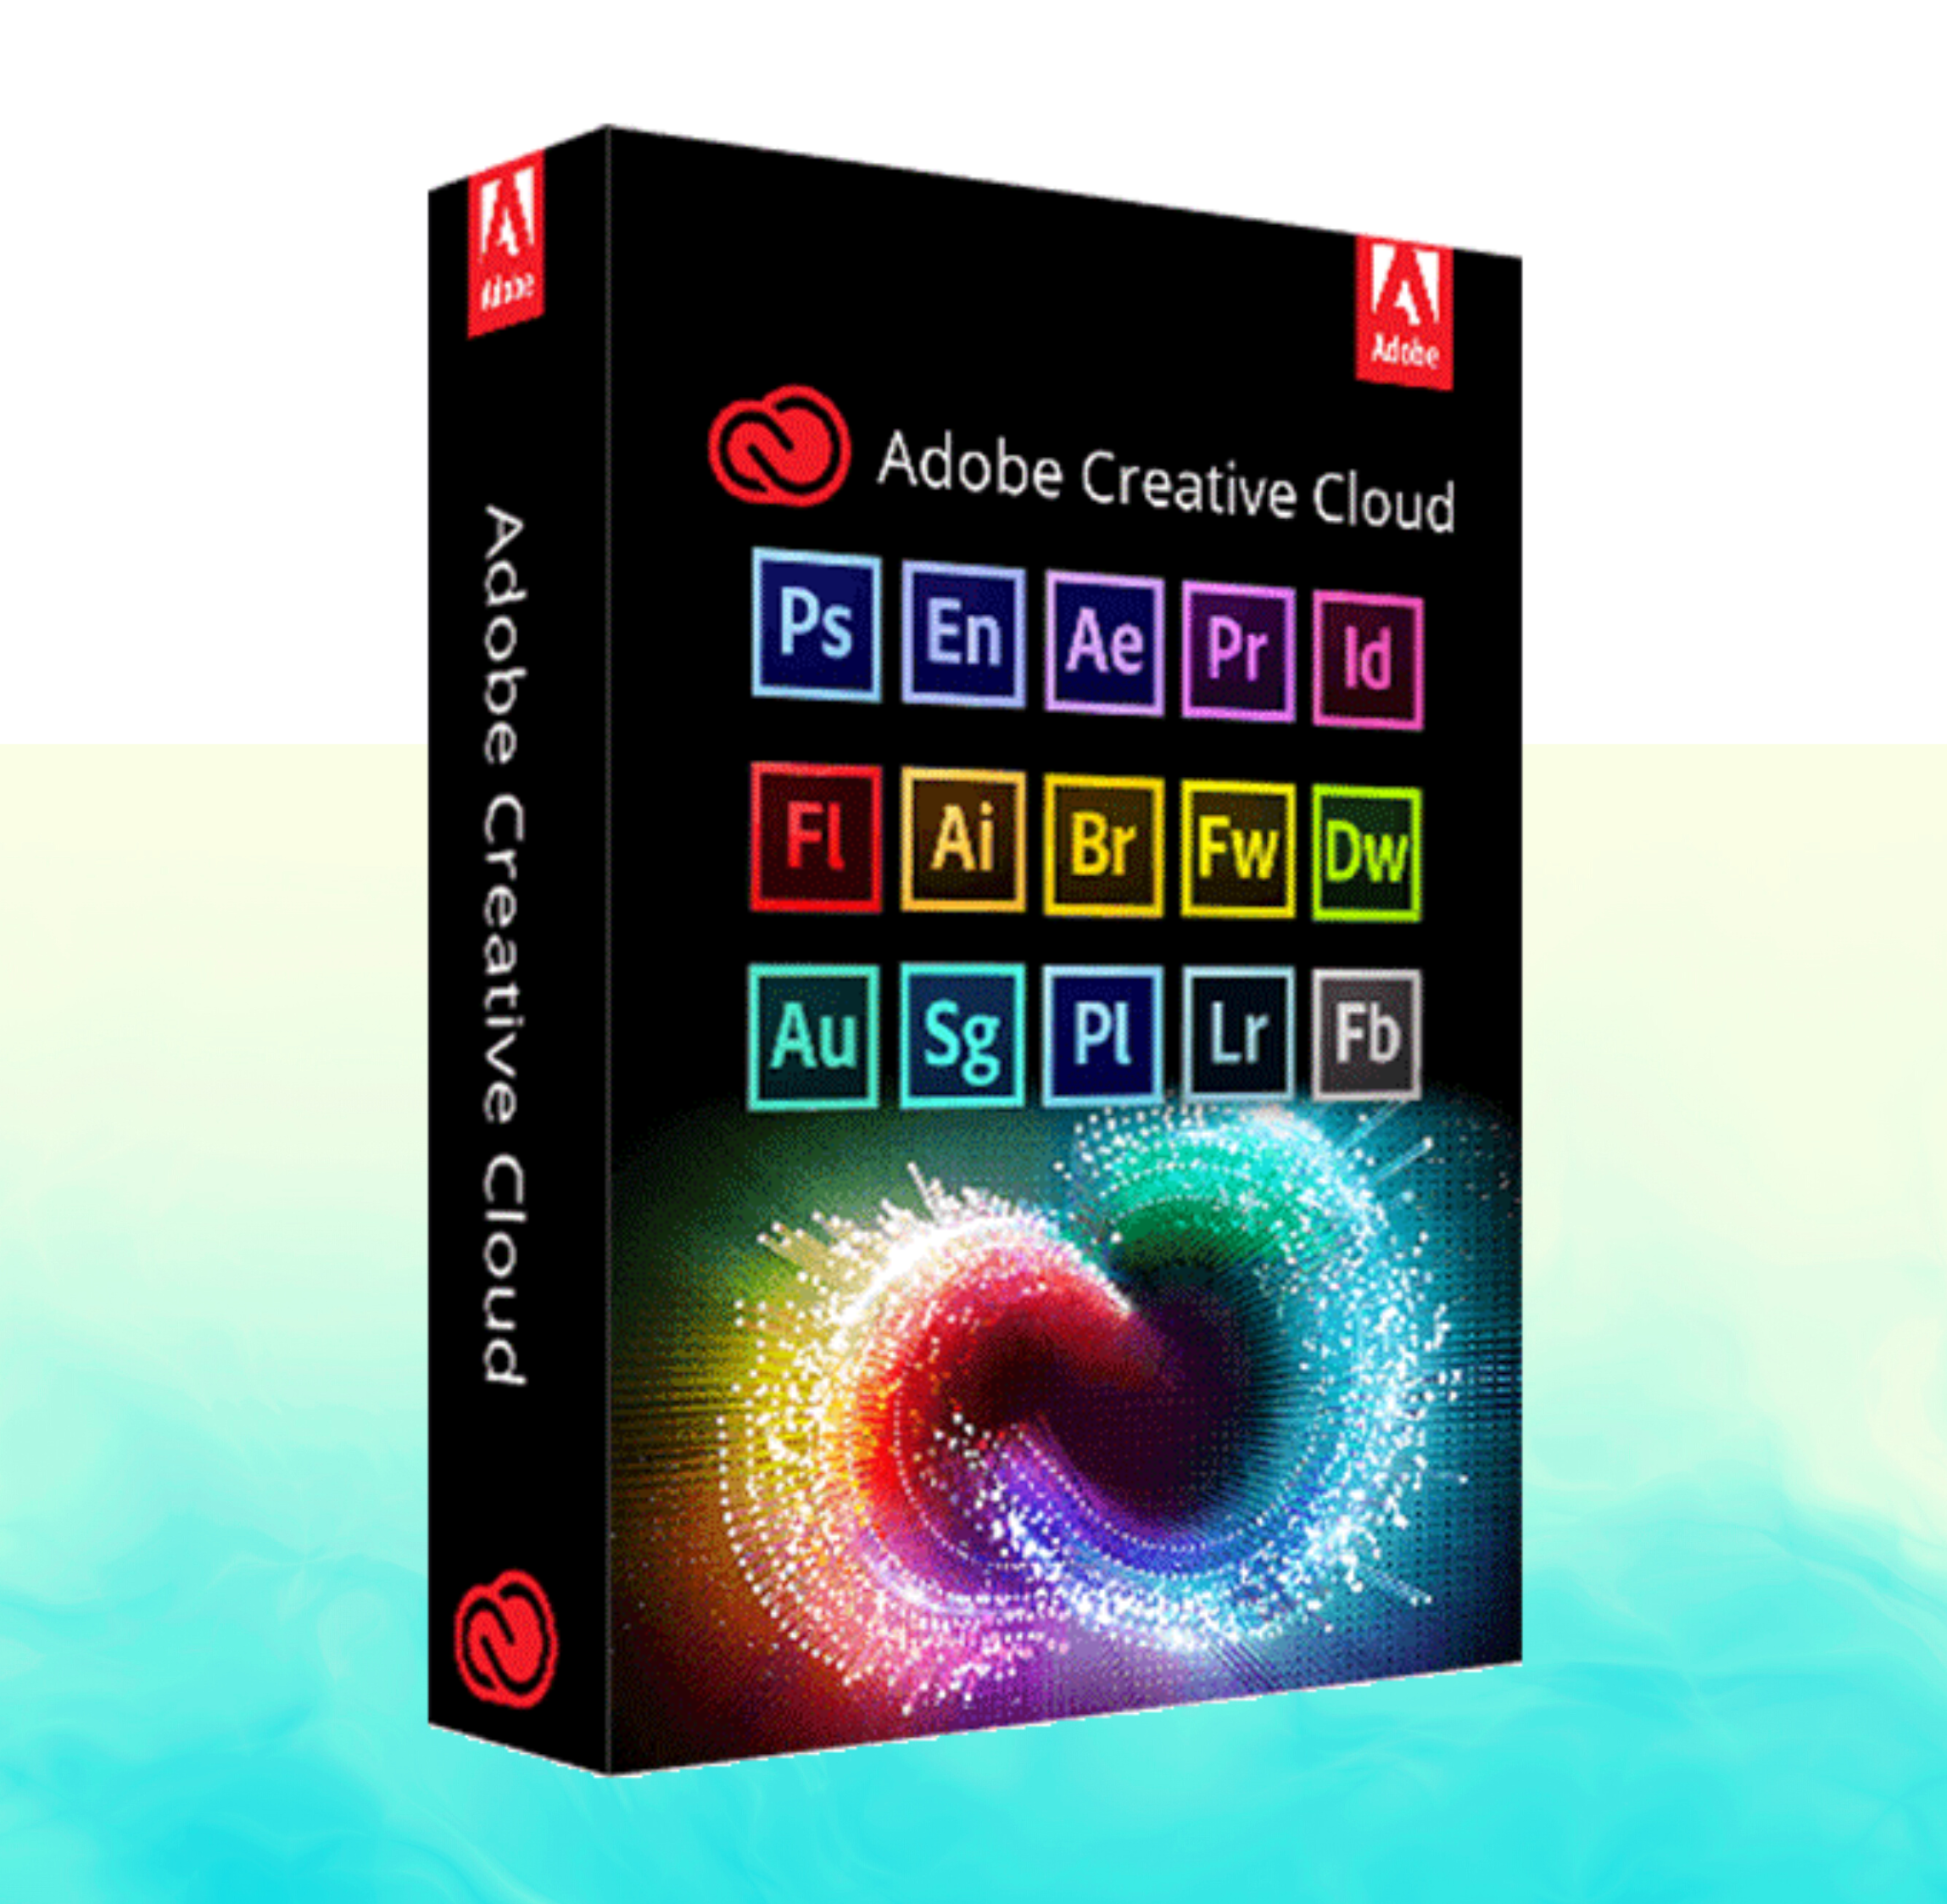 Adobe collection 2023. Adobe Master collection 2022. Adobe Creative. Creative cloud. Adobe Creative cloud 2023.